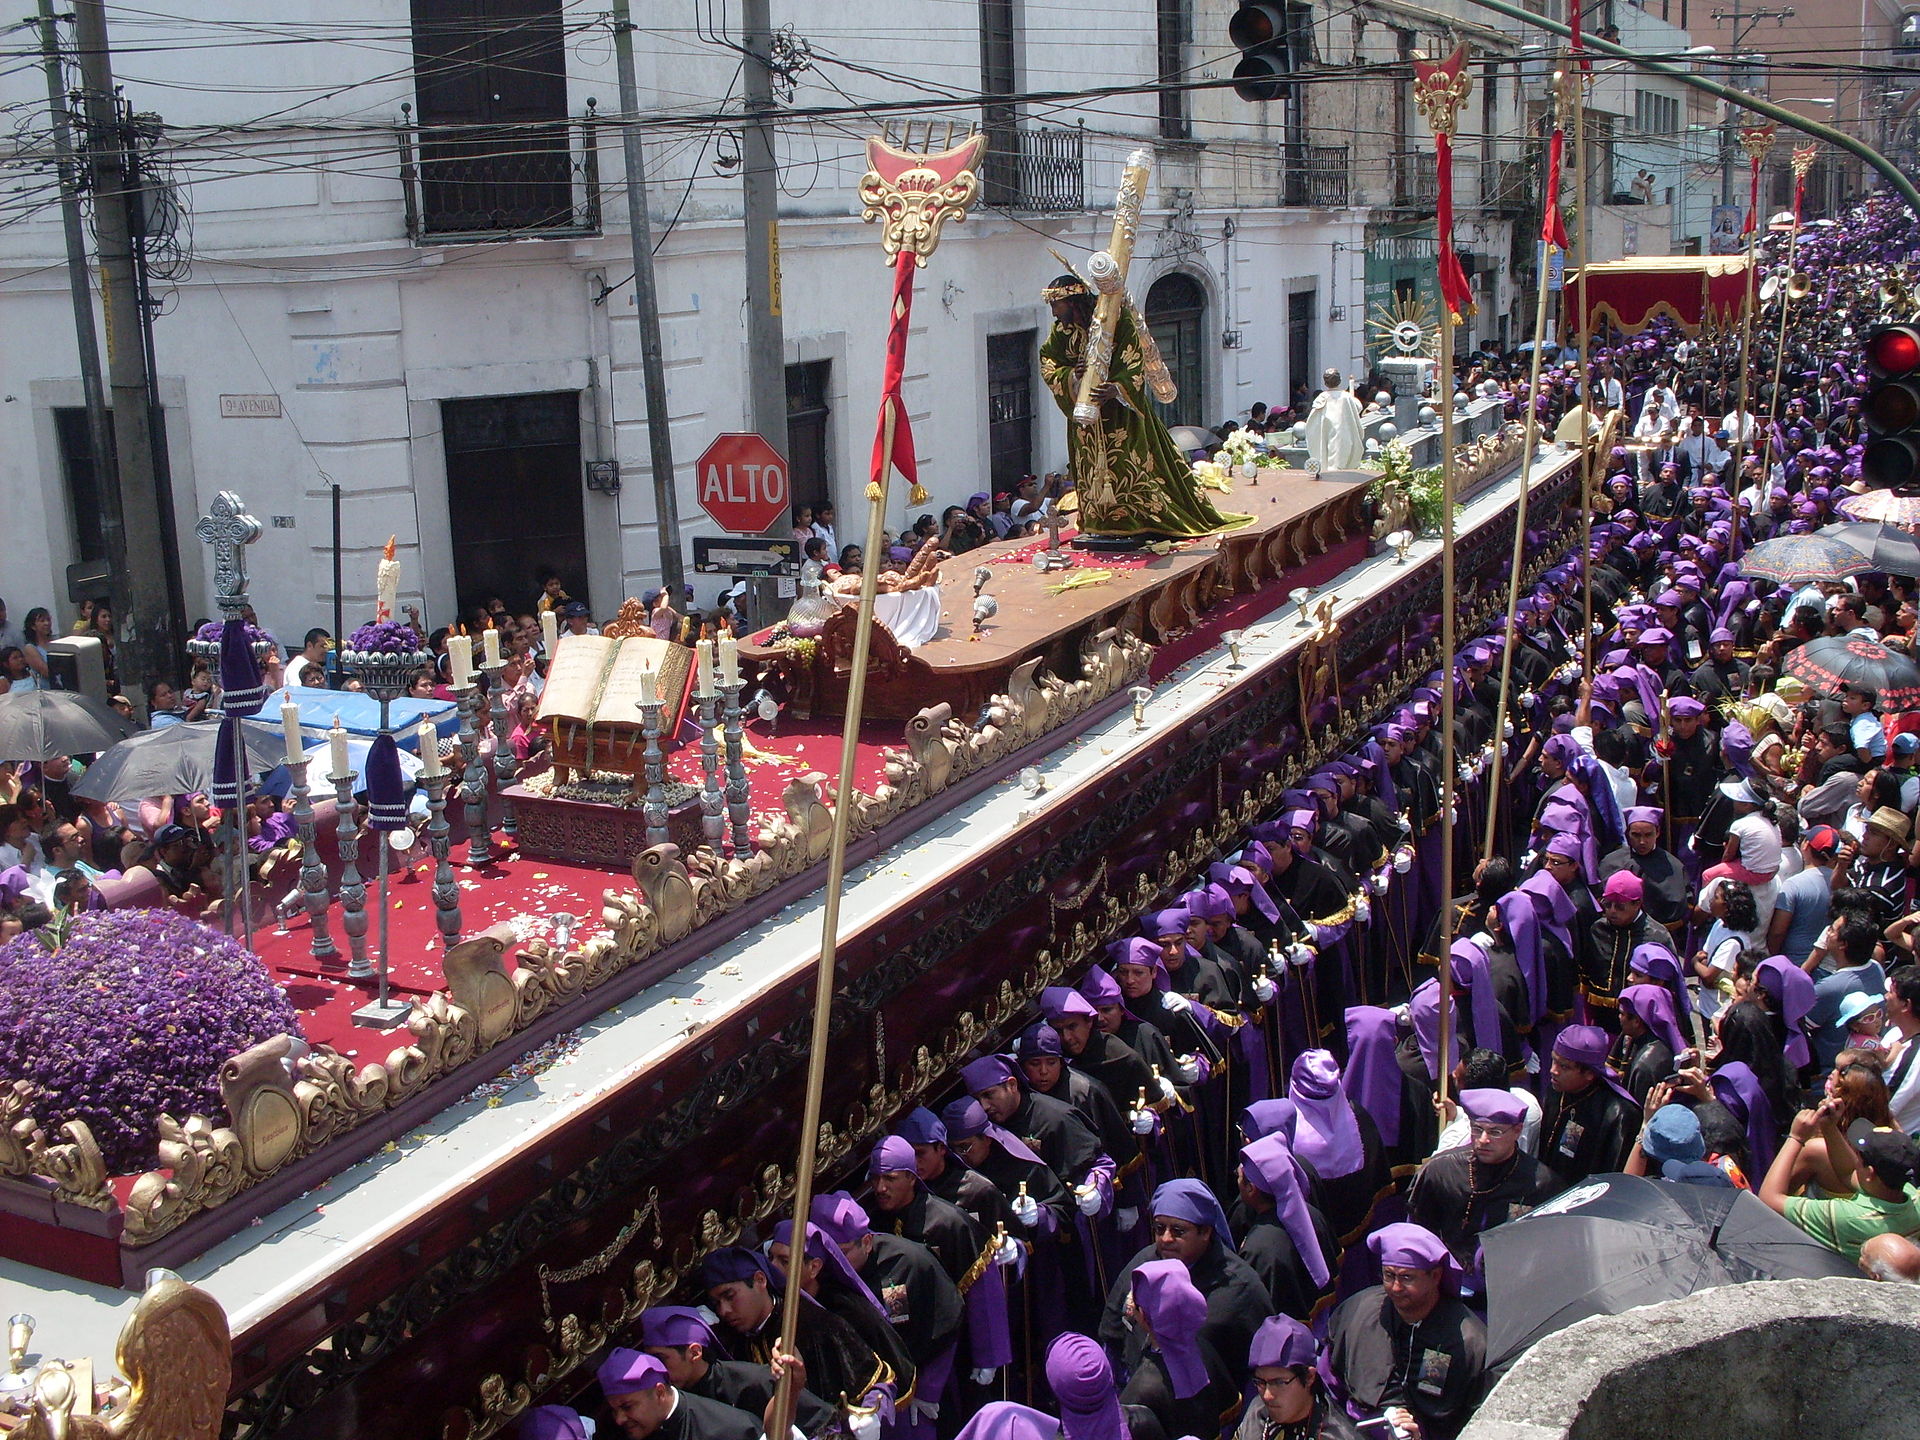 La Semana Santa de Guatemala es declarada patrimonio de la humanidad por la Unesco